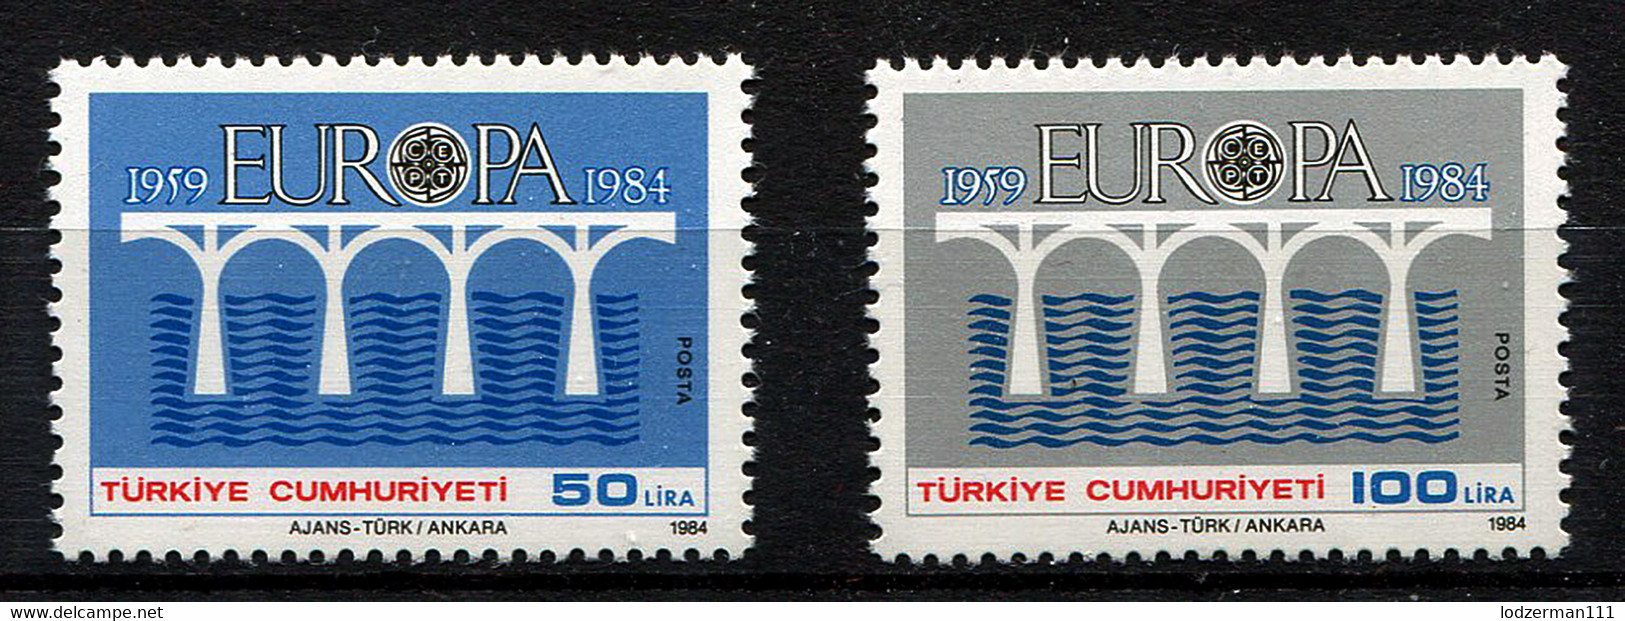 TURKEY - Europa CEPT 1984 MNH (postfrisch) VF - Ongebruikt